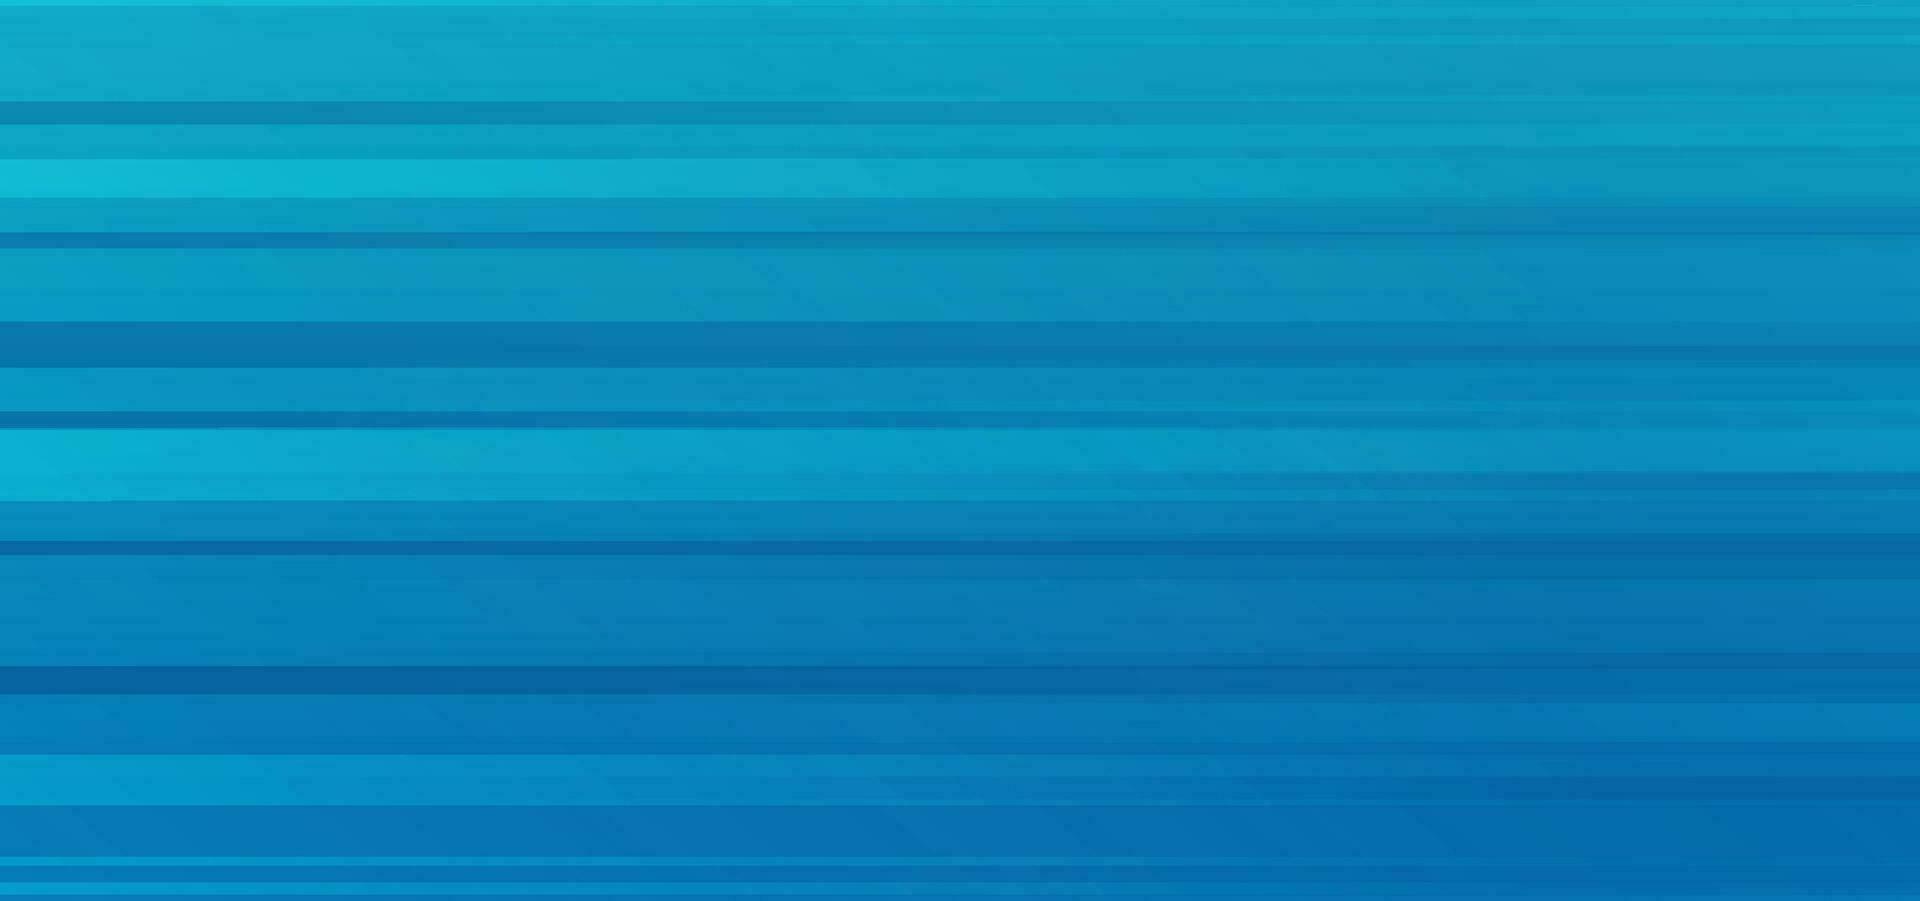 blauw gestreept abstract beweging achtergrond effect of modern lijnen dynamisch horizontaal effect voor banier of brochure vector illustratie beeld